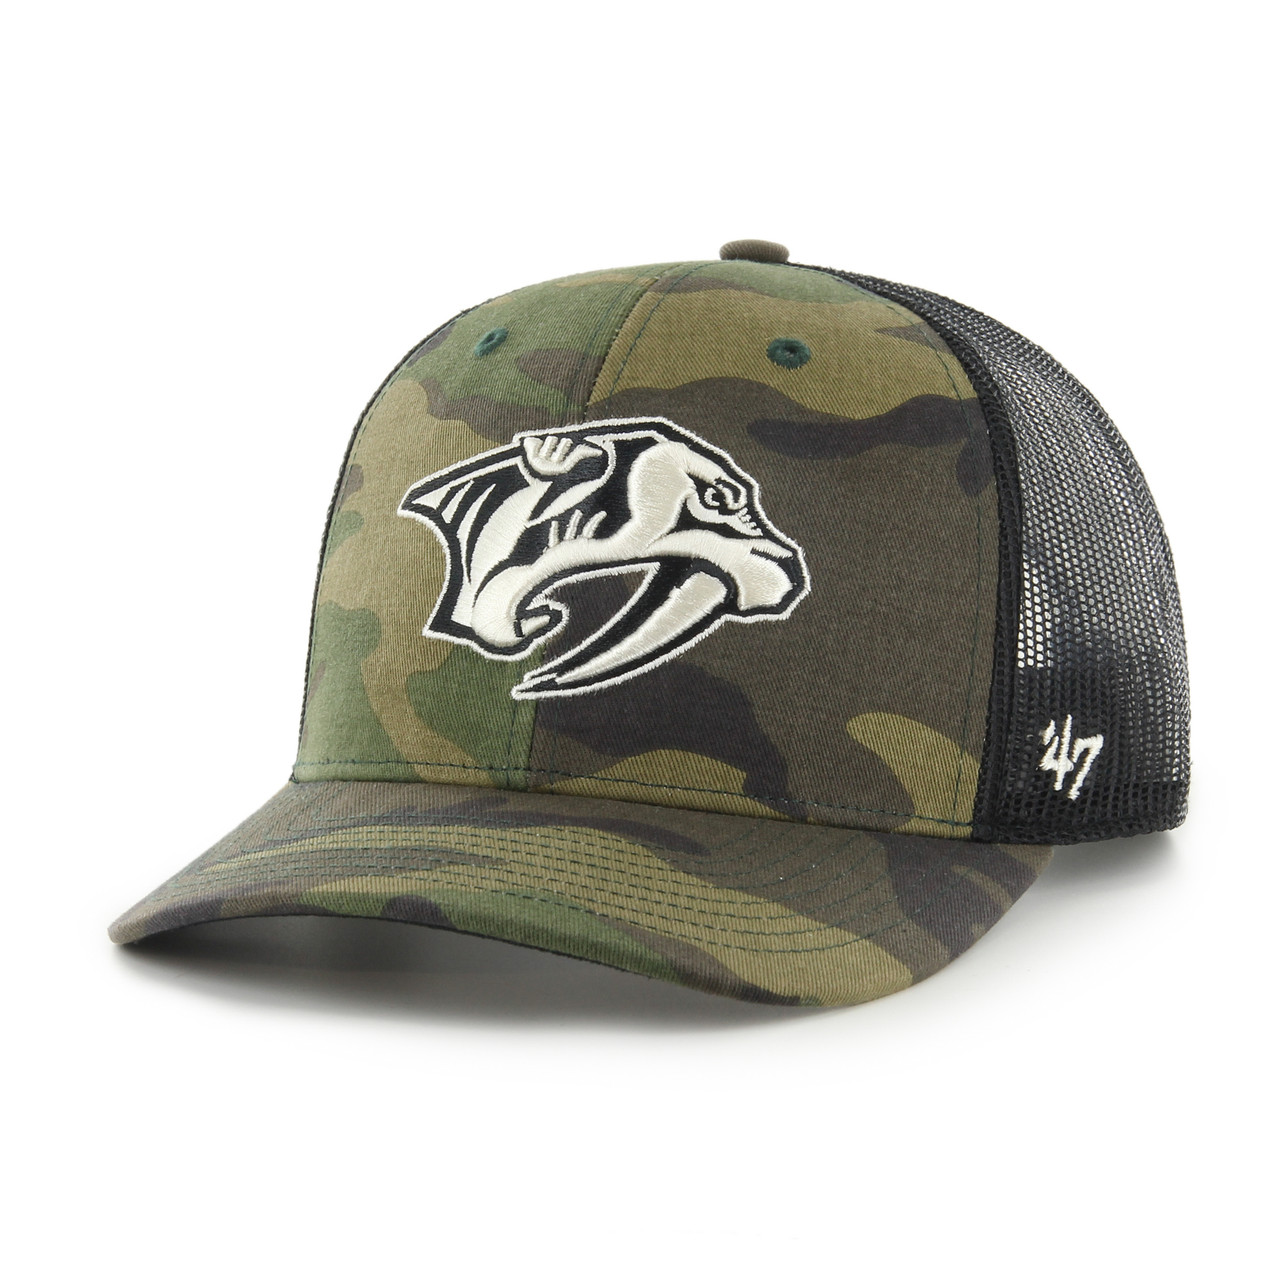 Nashville Predators 47 Brand Pick Trucker Hat